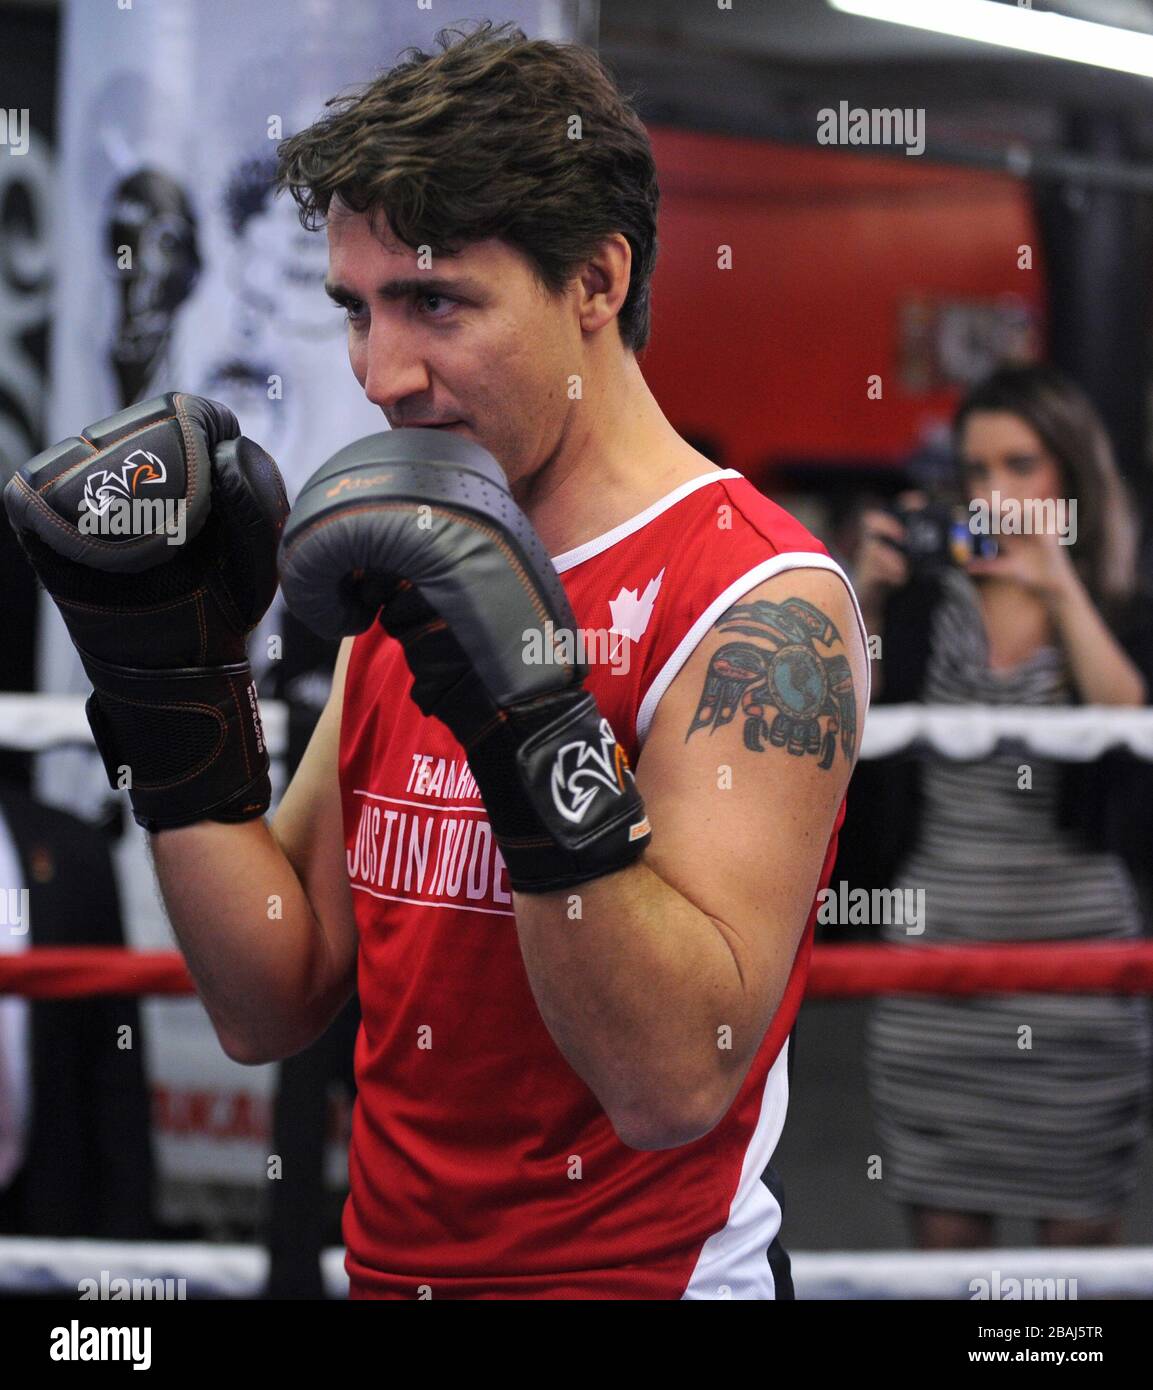 NEW YORK, NY - APRILE 21: Primo Ministro del Canada Justin Trudeau boxing a New York il 21 Aprile 2016 a New York City. Persone: Primo Ministro del Canada Justin Trudeau Foto Stock